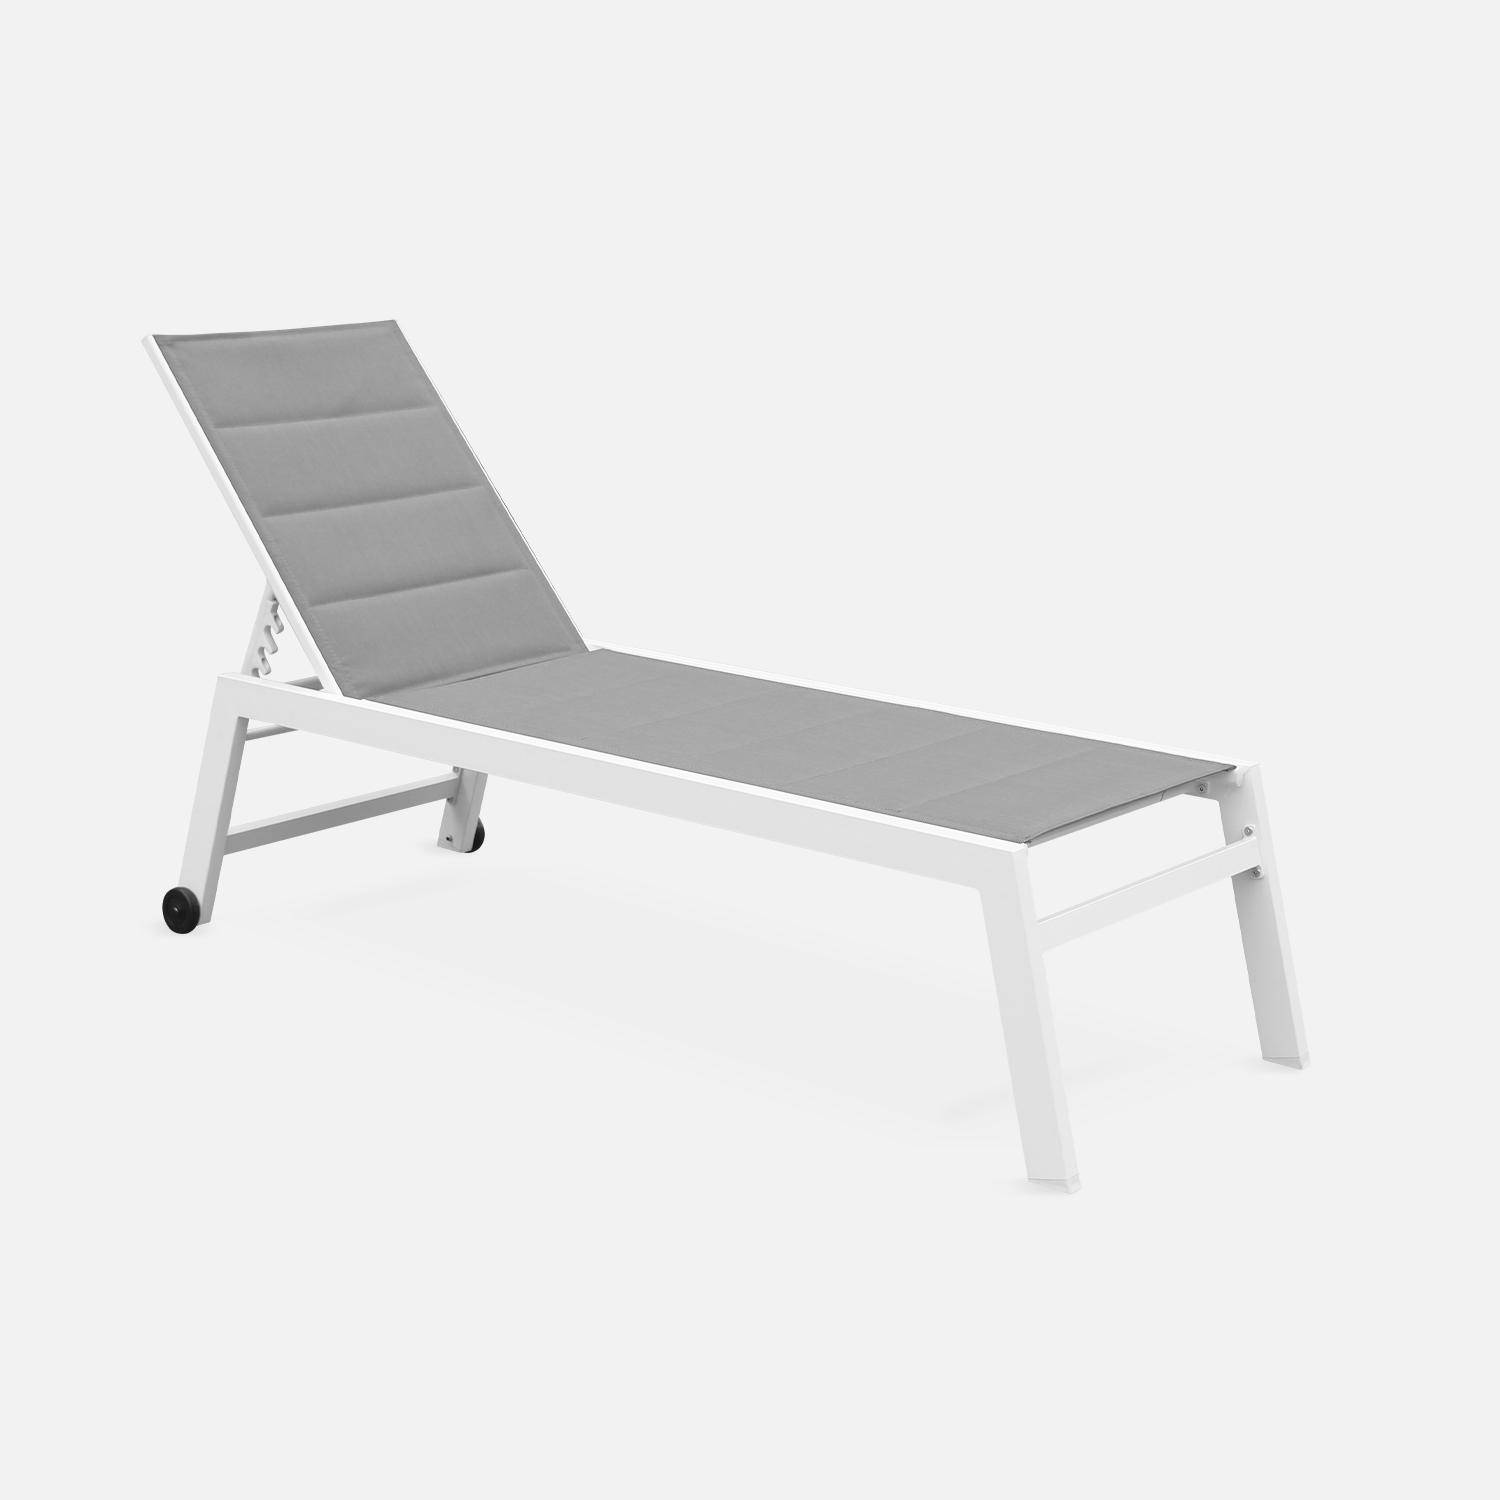 Tumbona de aluminio blanco y textileno gris, reclinable 6 posiciones | Solis,sweeek,Photo2